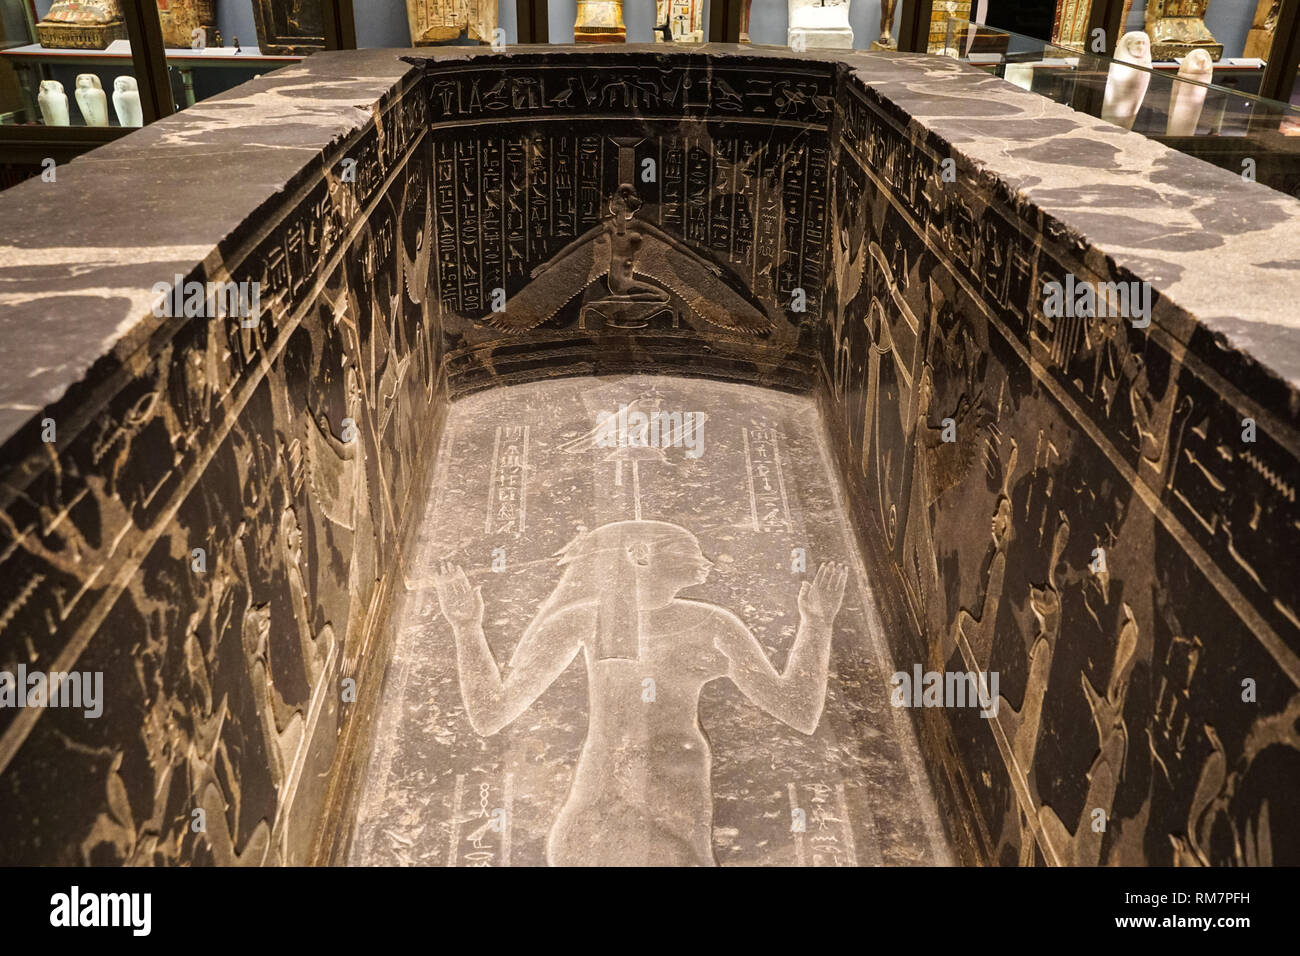 Sarcophage de l'Egypte ancienne s'affichent dans le Kunsthistorisches Museum de Vienne, Autriche Banque D'Images